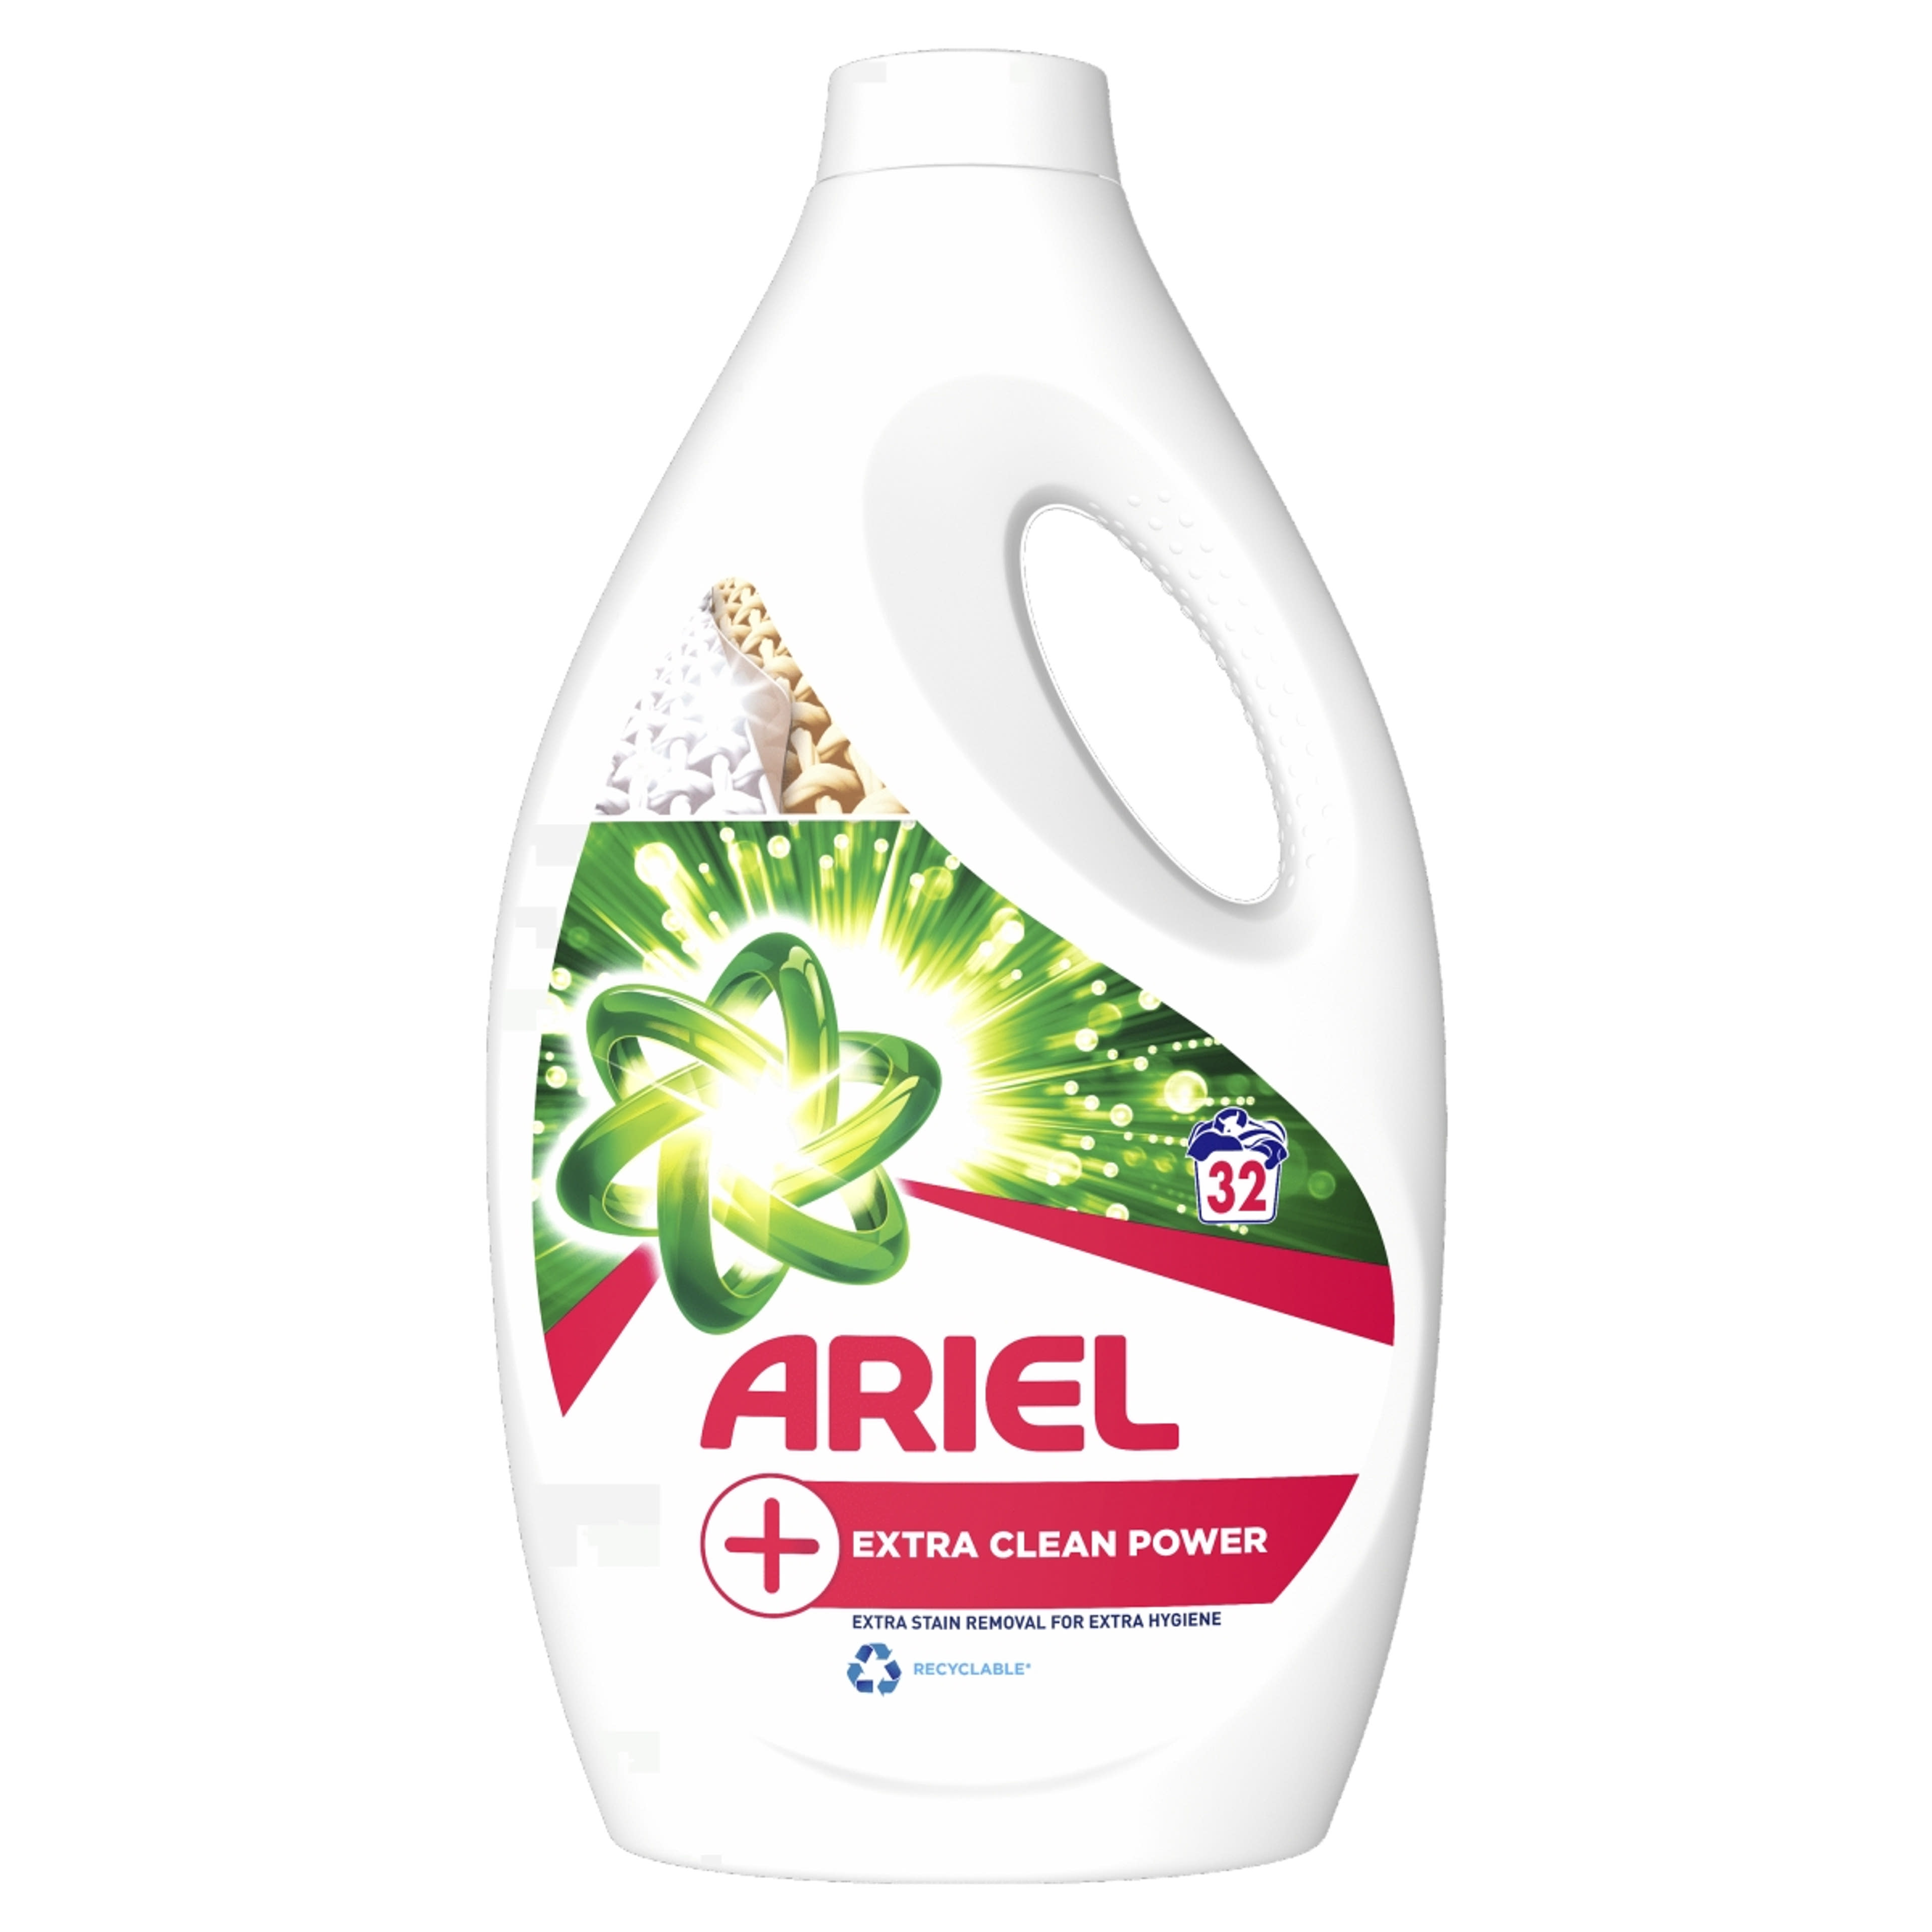 Ariel +Extra Clean Power folyékony mosószer, 32 mosáshoz - 1760 ml